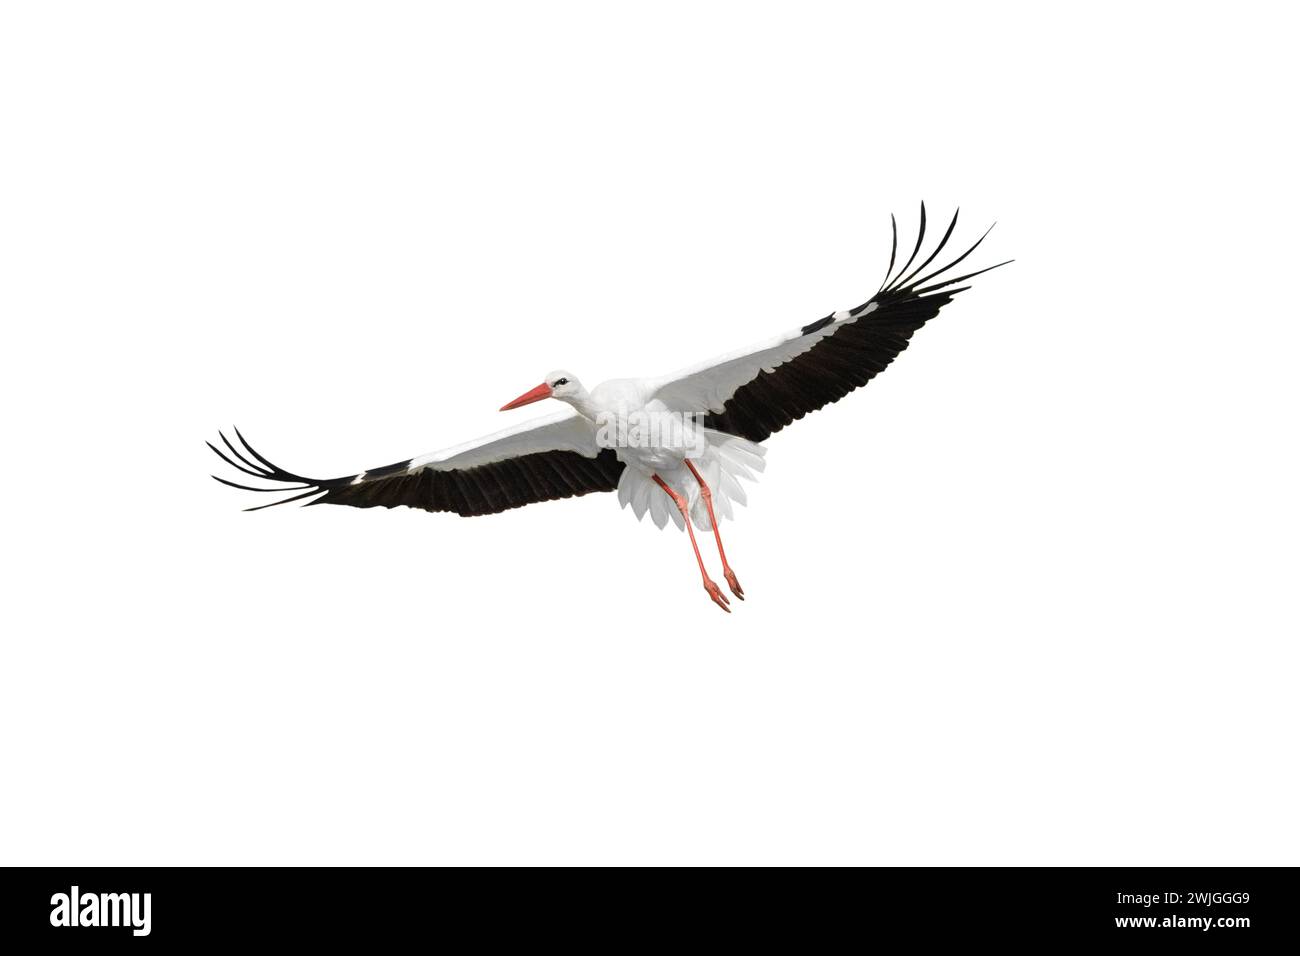 flying stork isolated on white background Stock Photo